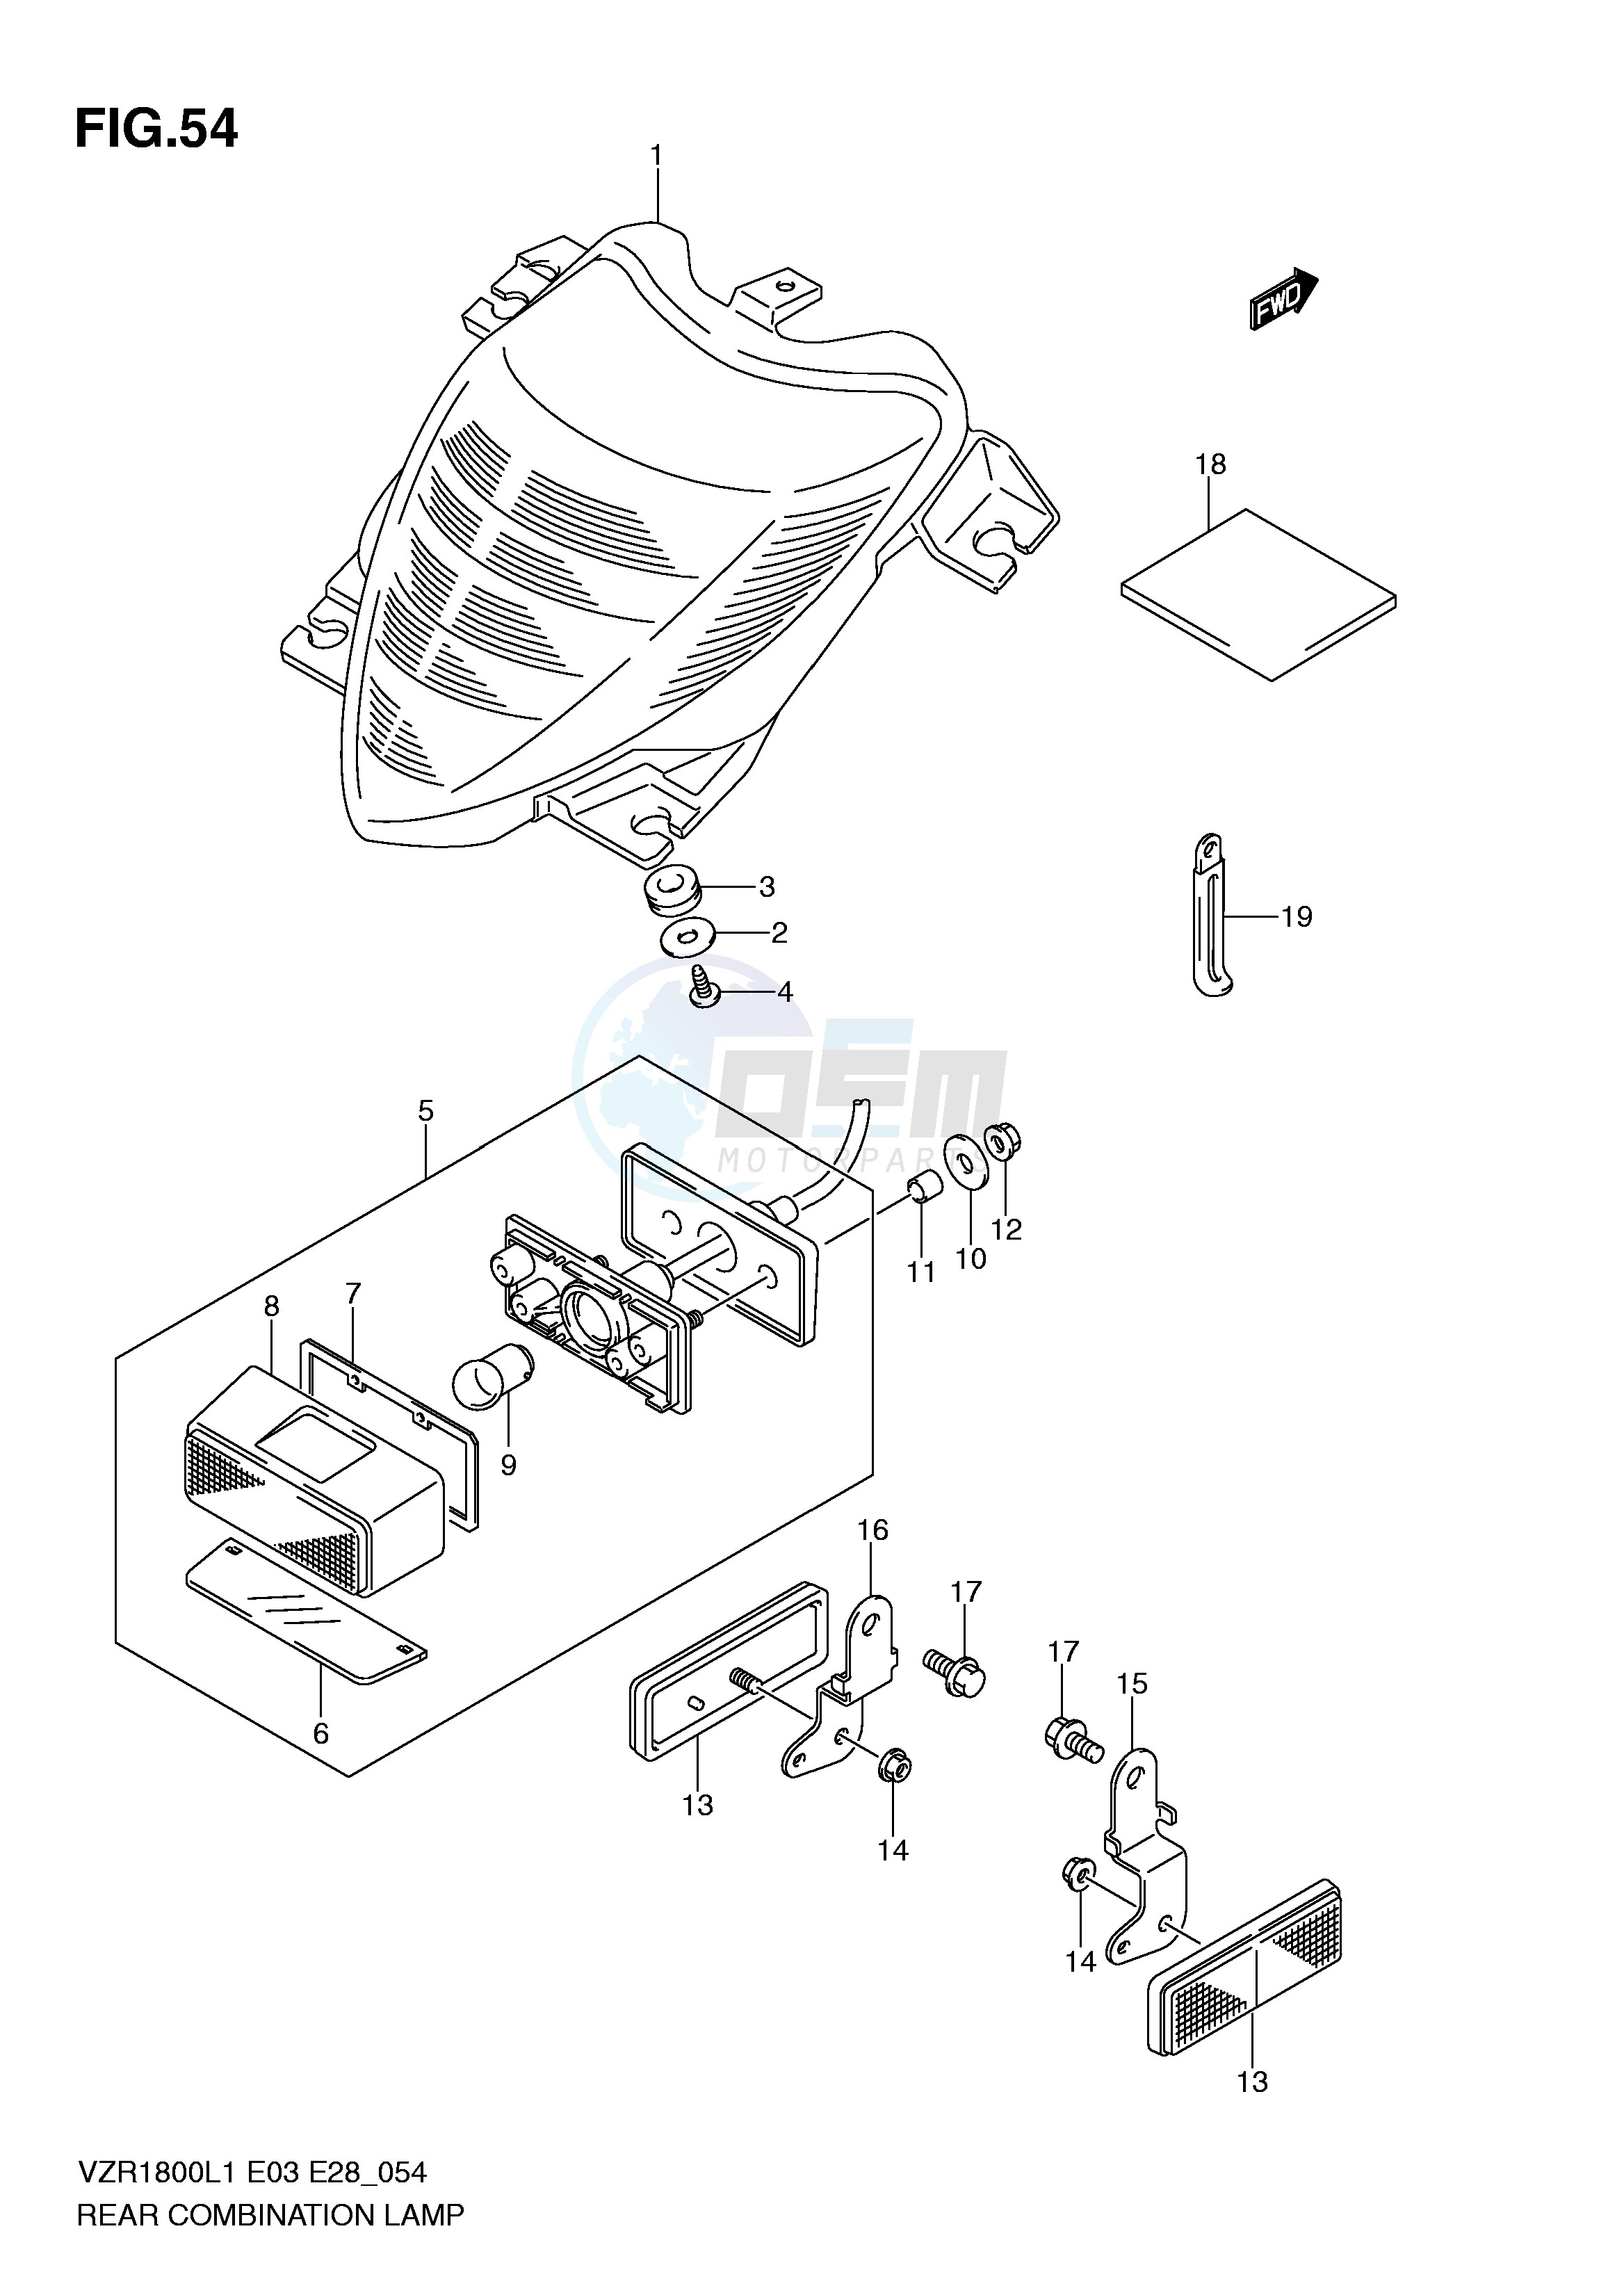 REAR COMBINATION LAMP (VZR1800L1 E3) blueprint